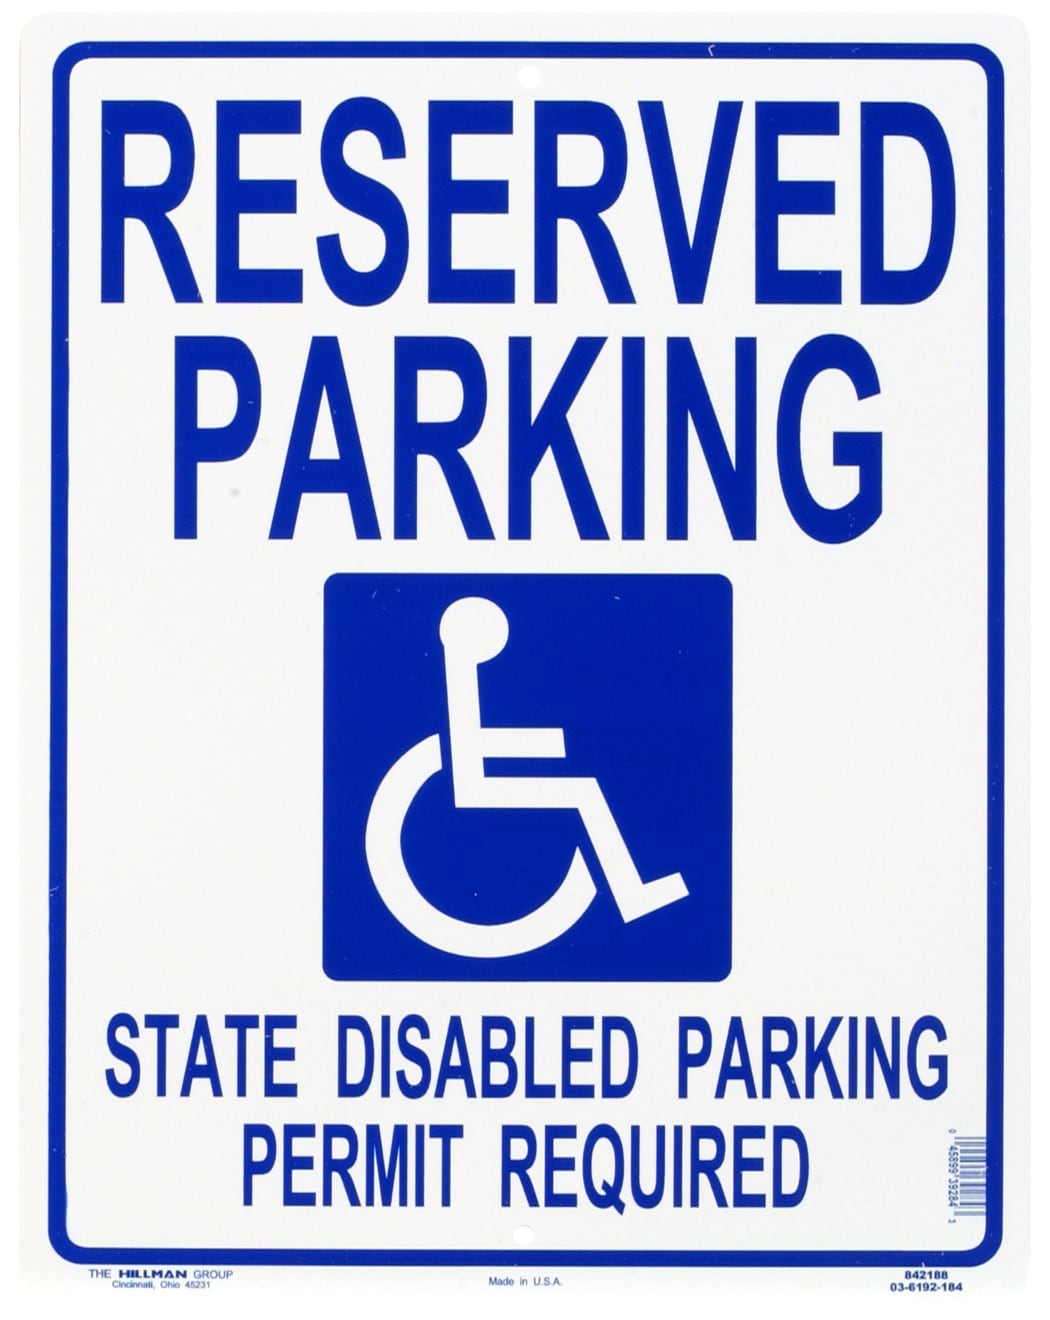 parking garage signs